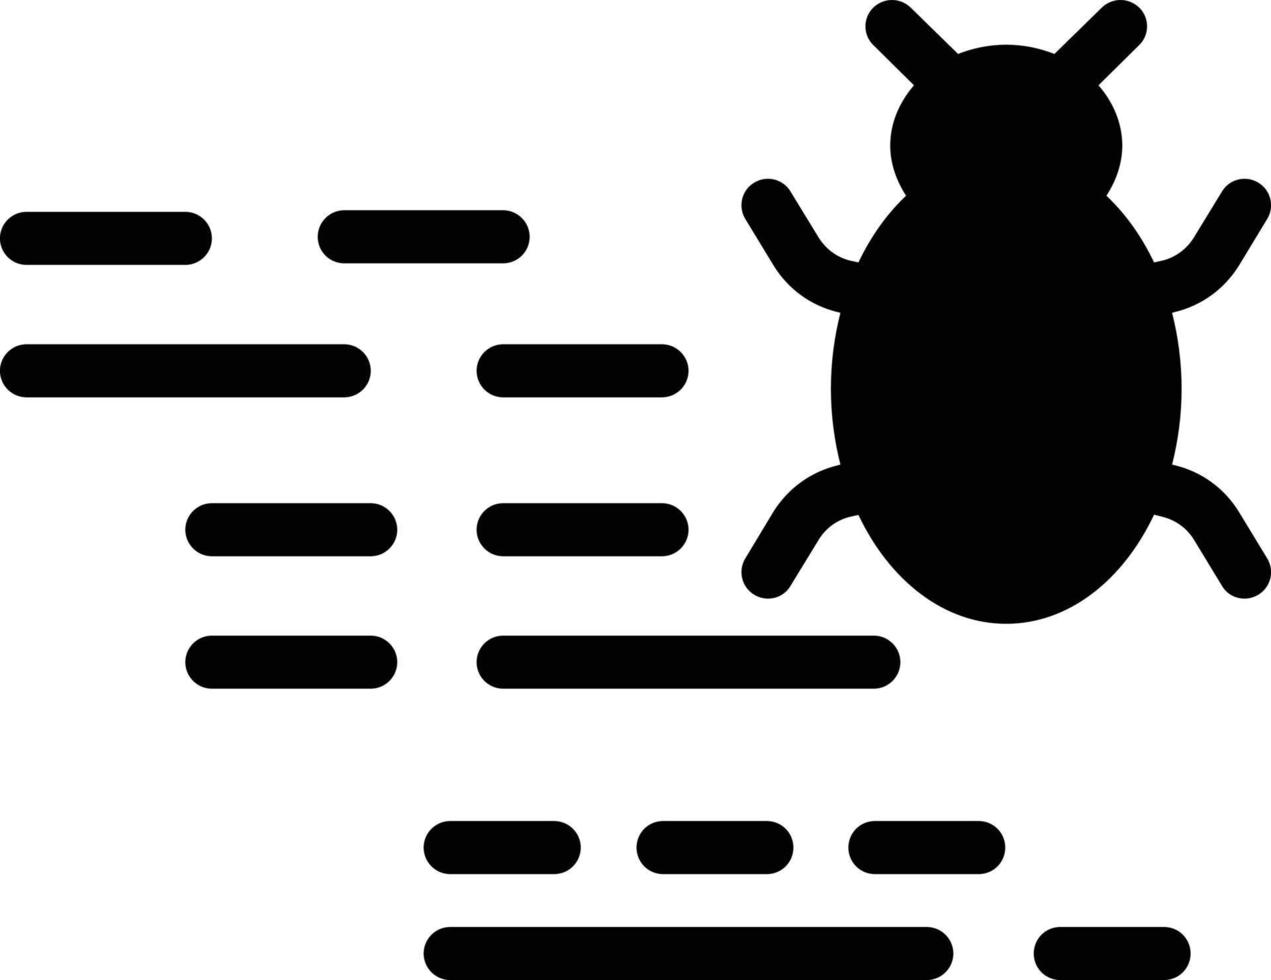 illustrazione vettoriale bug su uno sfondo. simboli di qualità premium. icone vettoriali per il concetto e la progettazione grafica.